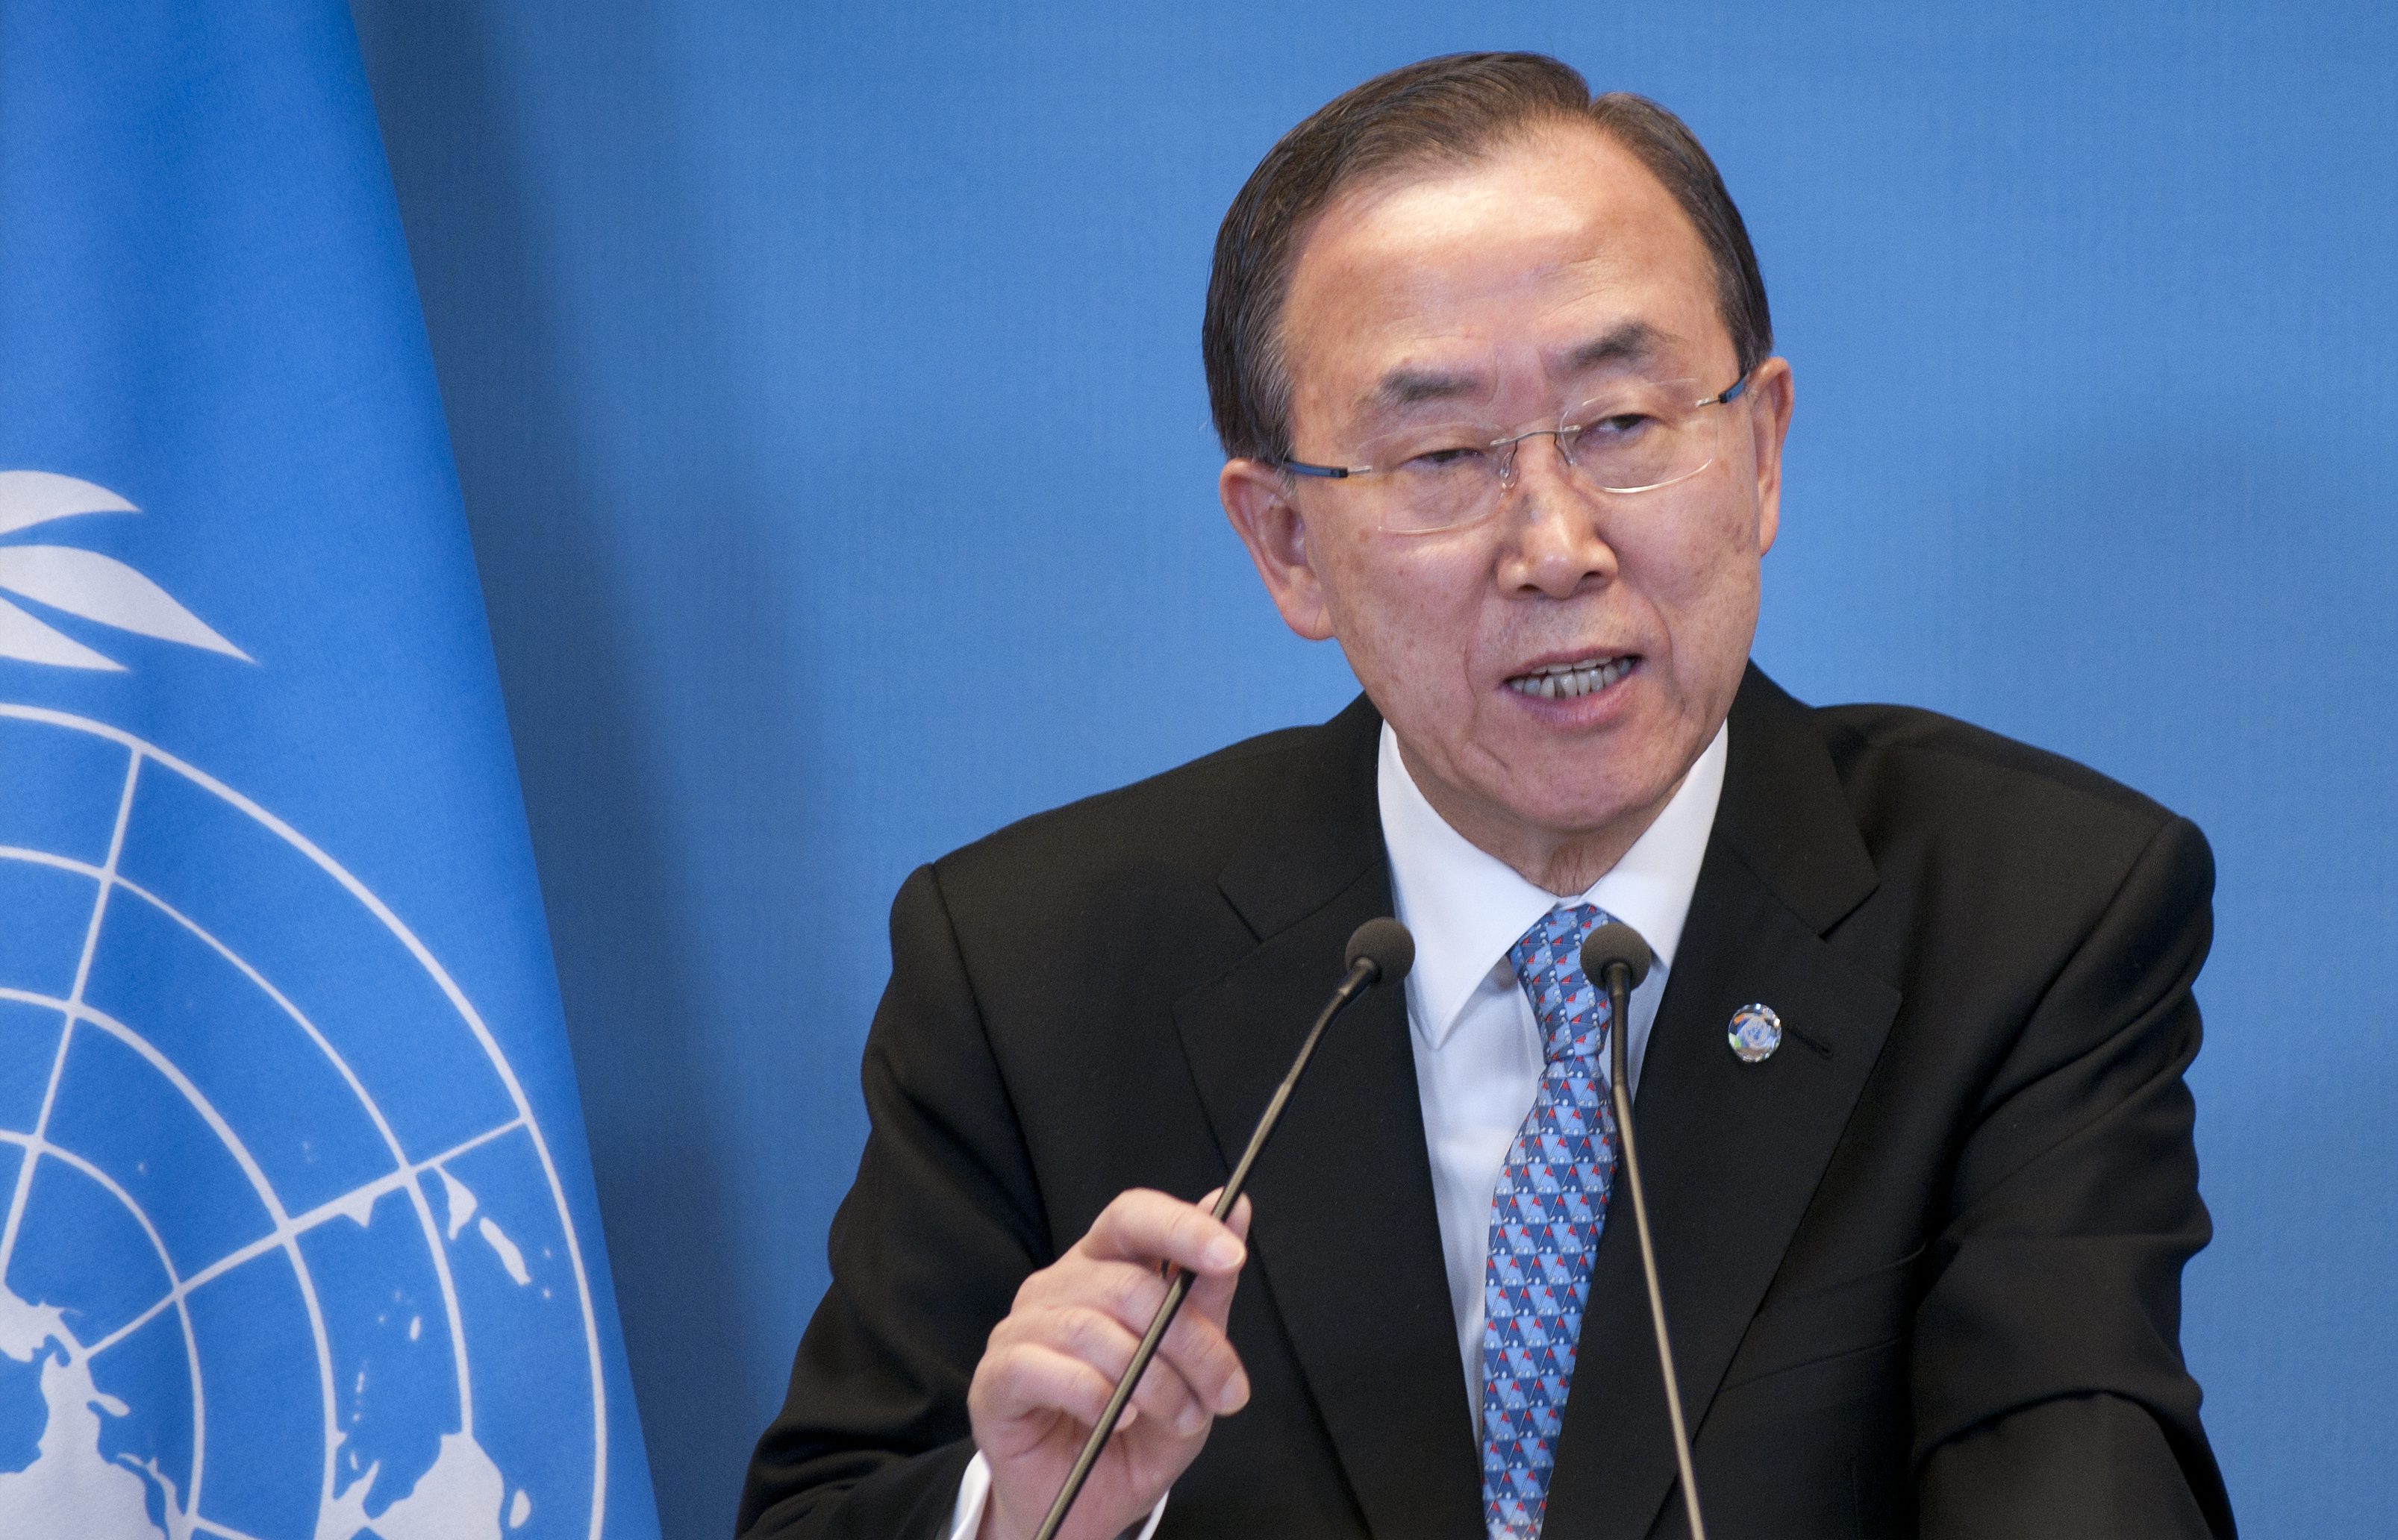 Der Generalsekretär der Vereinten Nationen, Ban Ki-moon, setzt sich für die Menschenrechte auch von Inter* ein!